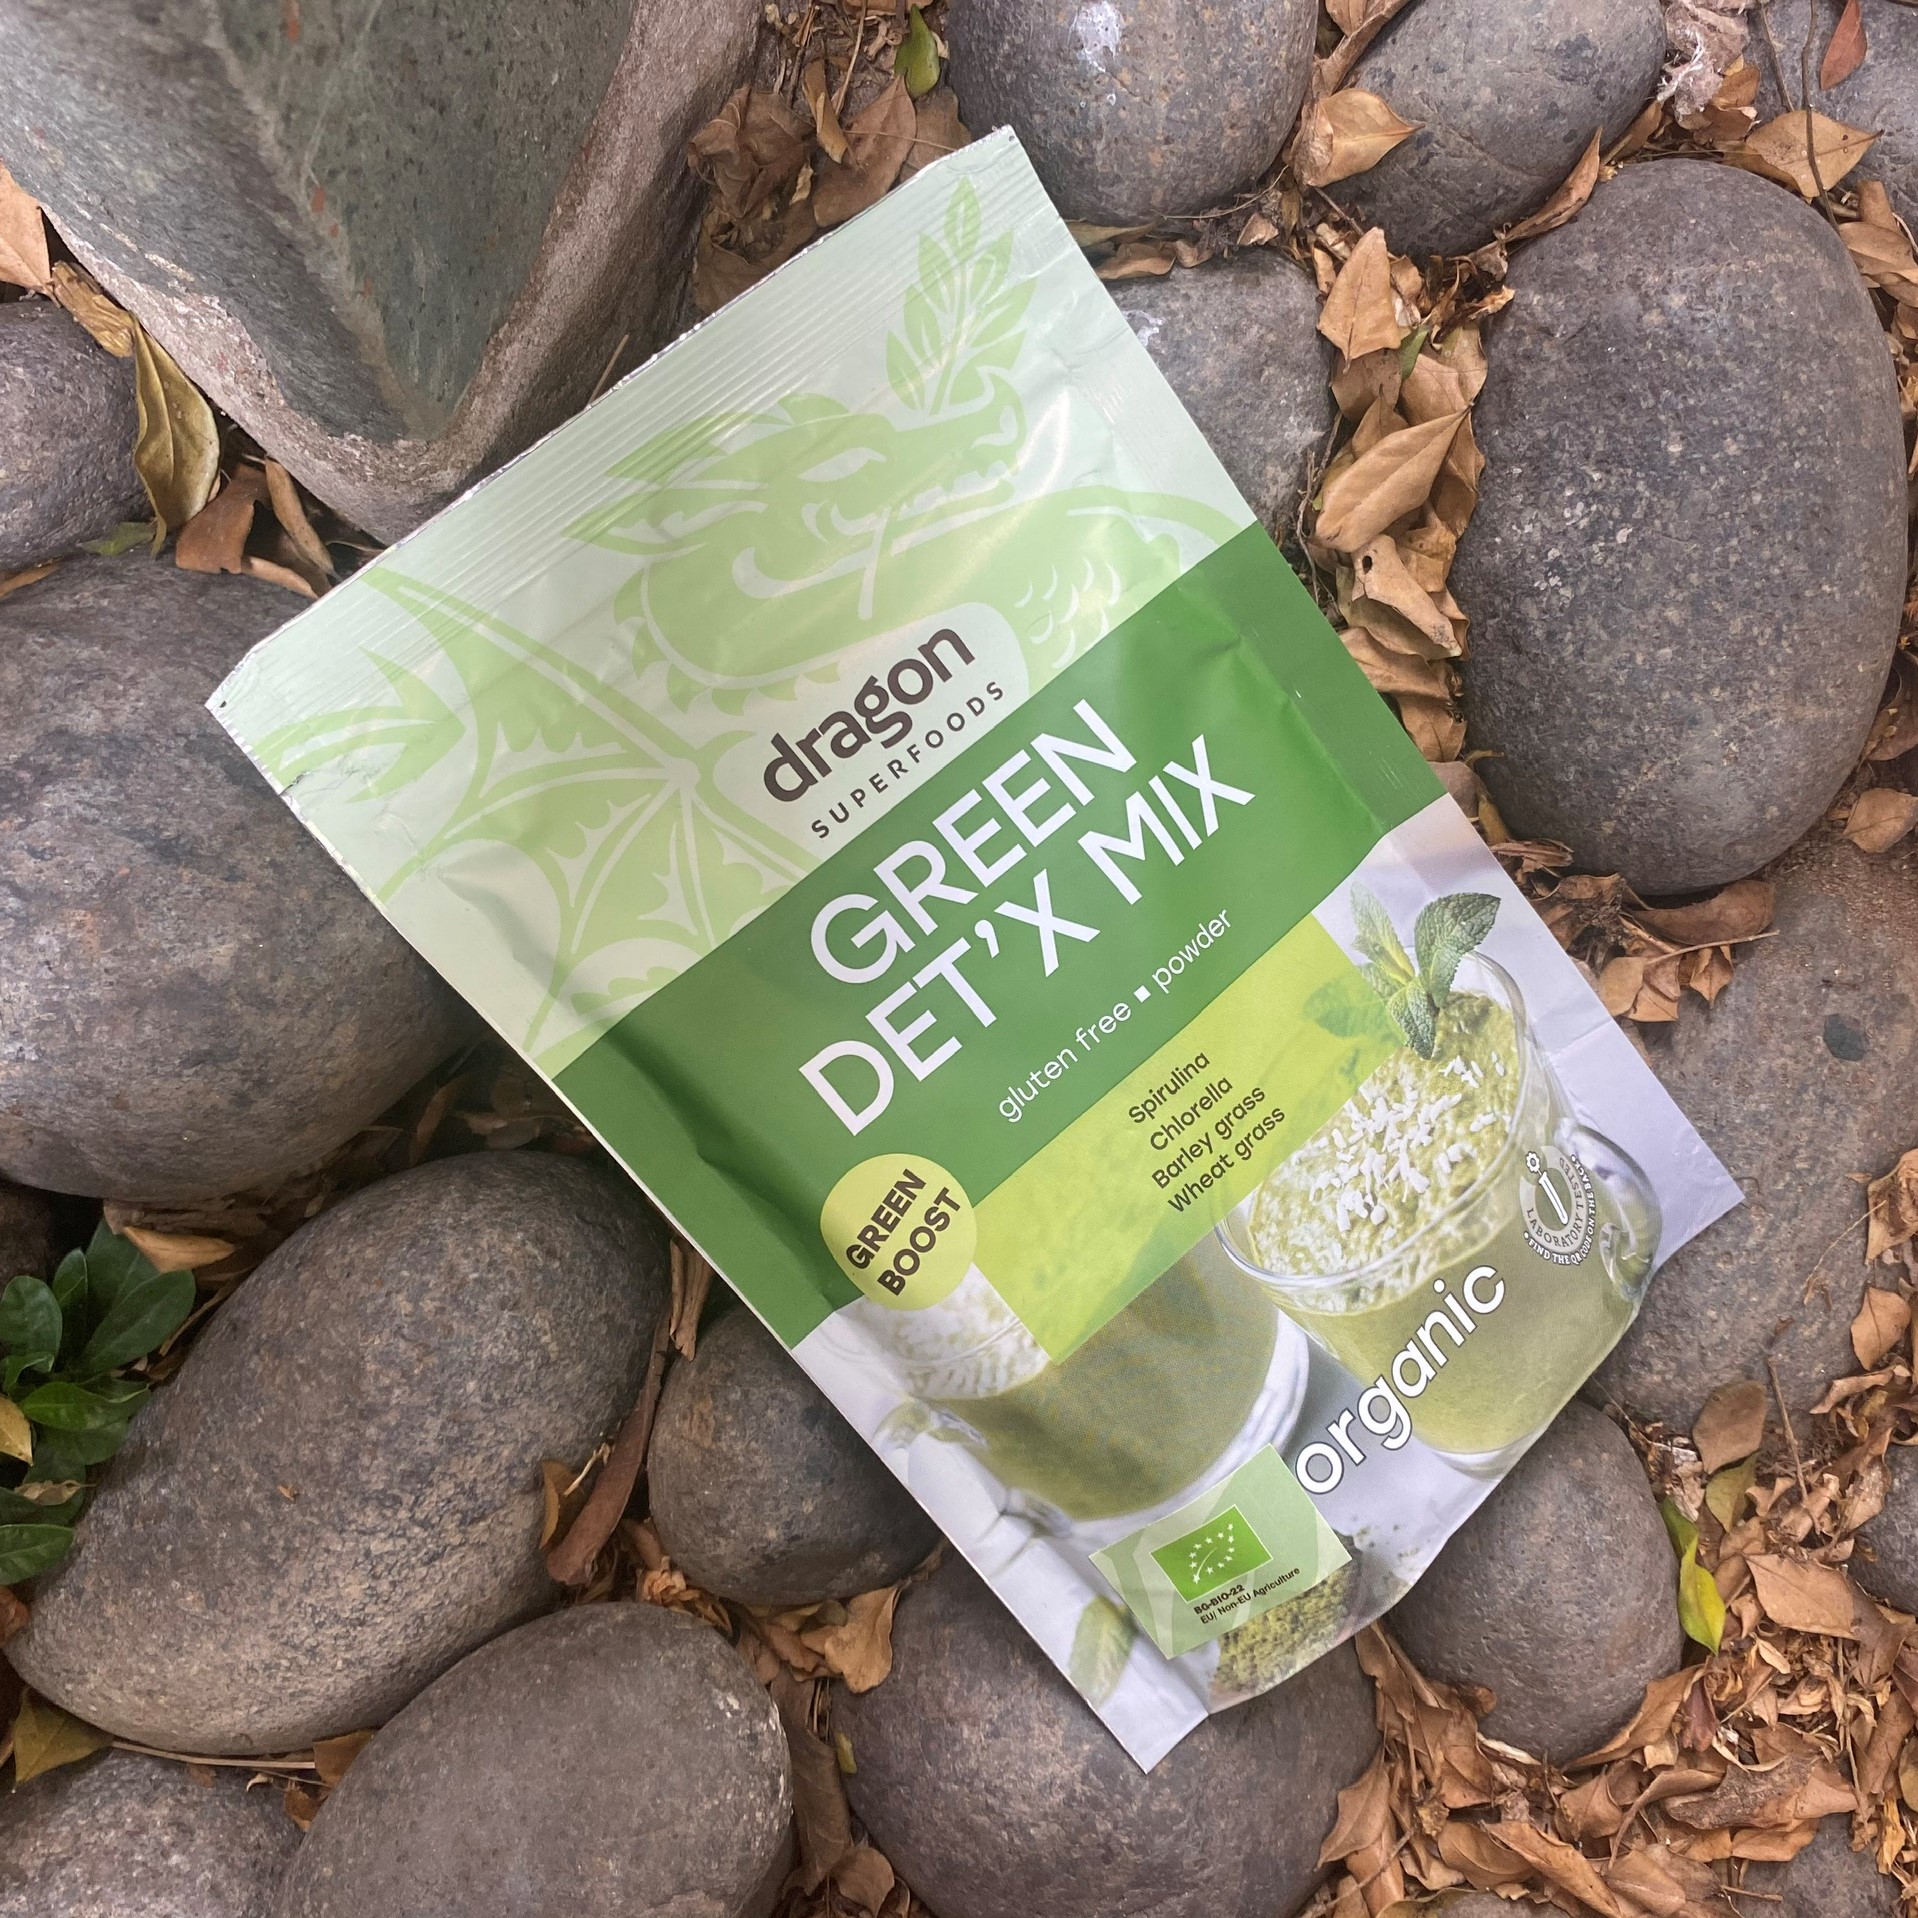 Hỗn hợp bột xanh detox hữu cơ Green detox organic Dragon Superfoods 200g (spirulina, chlorella, cỏ lúa mì, cỏ lúa mạch)